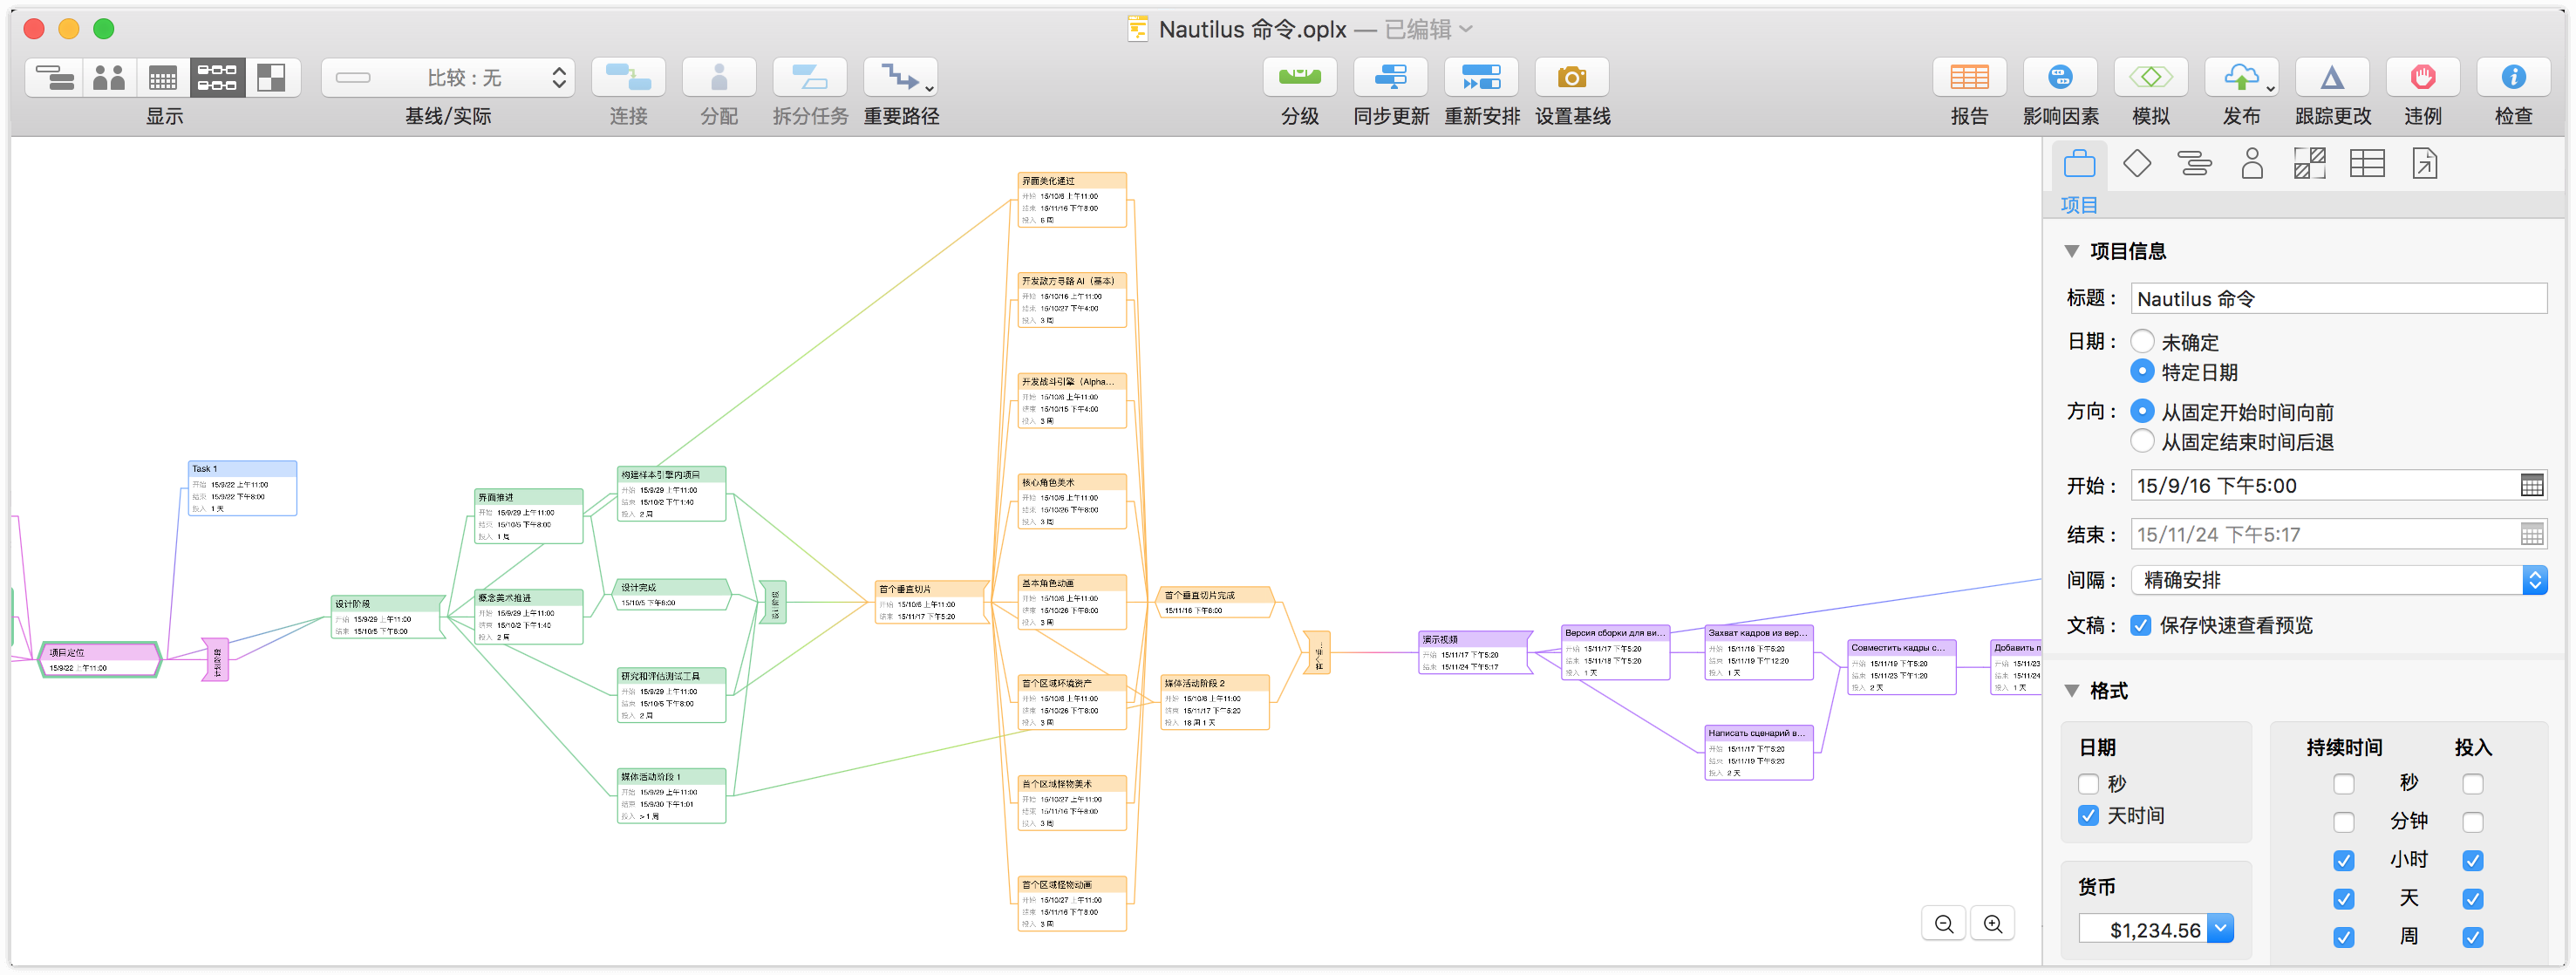 OmniPlan 3 中网络视图上显示的项目。